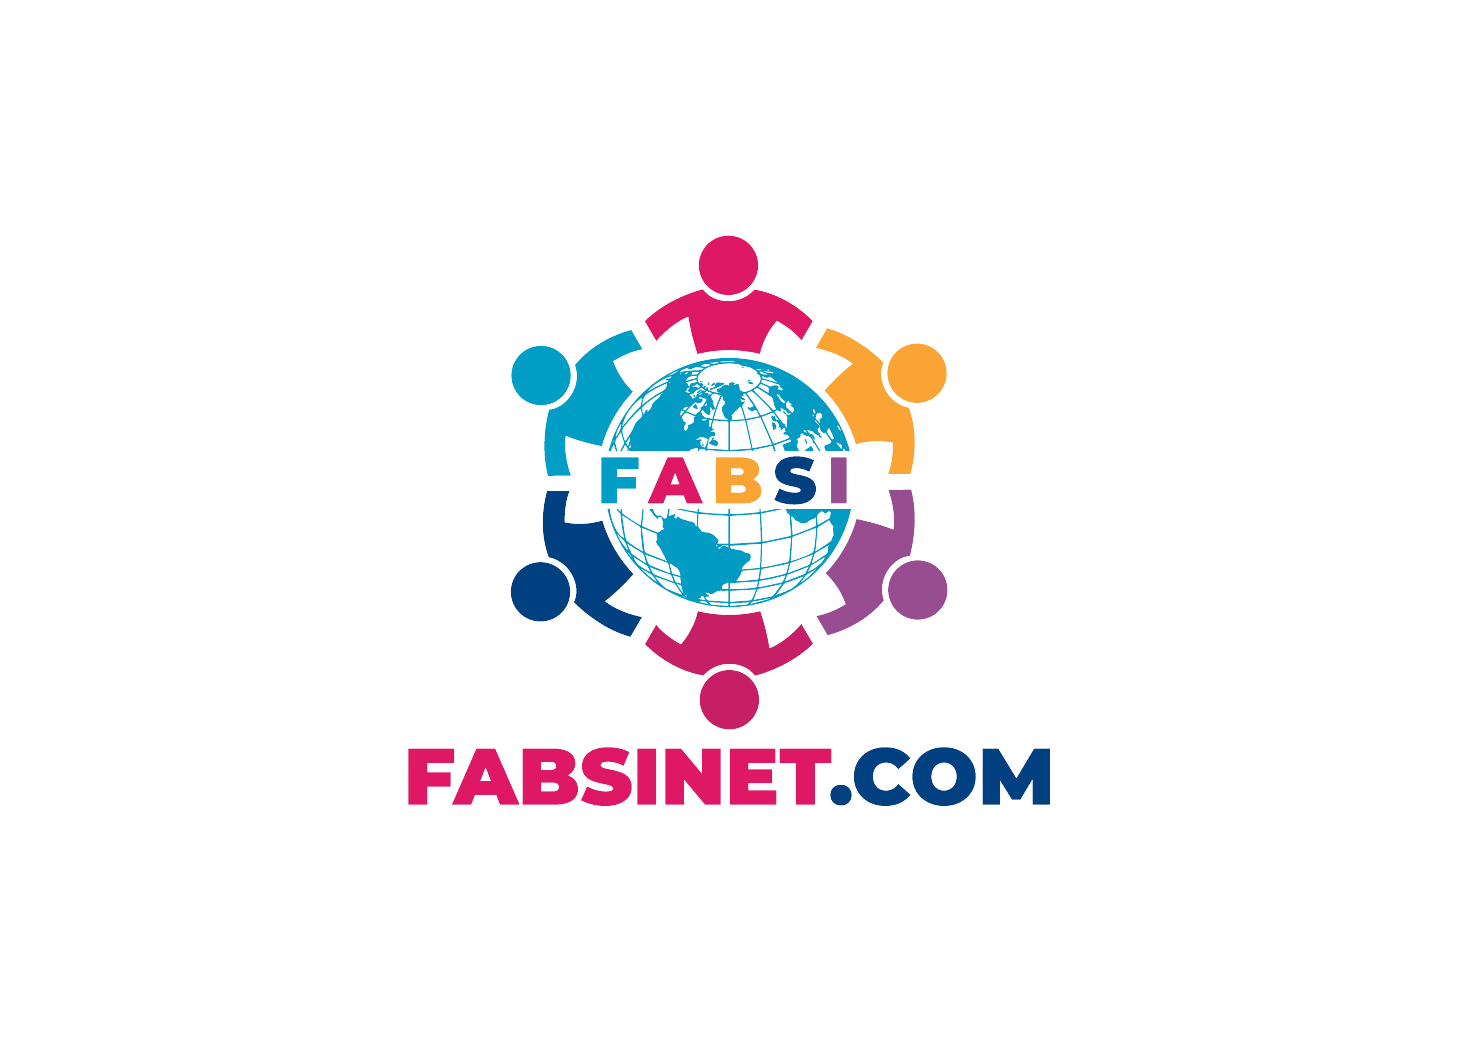 FABSINET - 50% OFF FROM REGULAR SMART SUBSCRIPTION